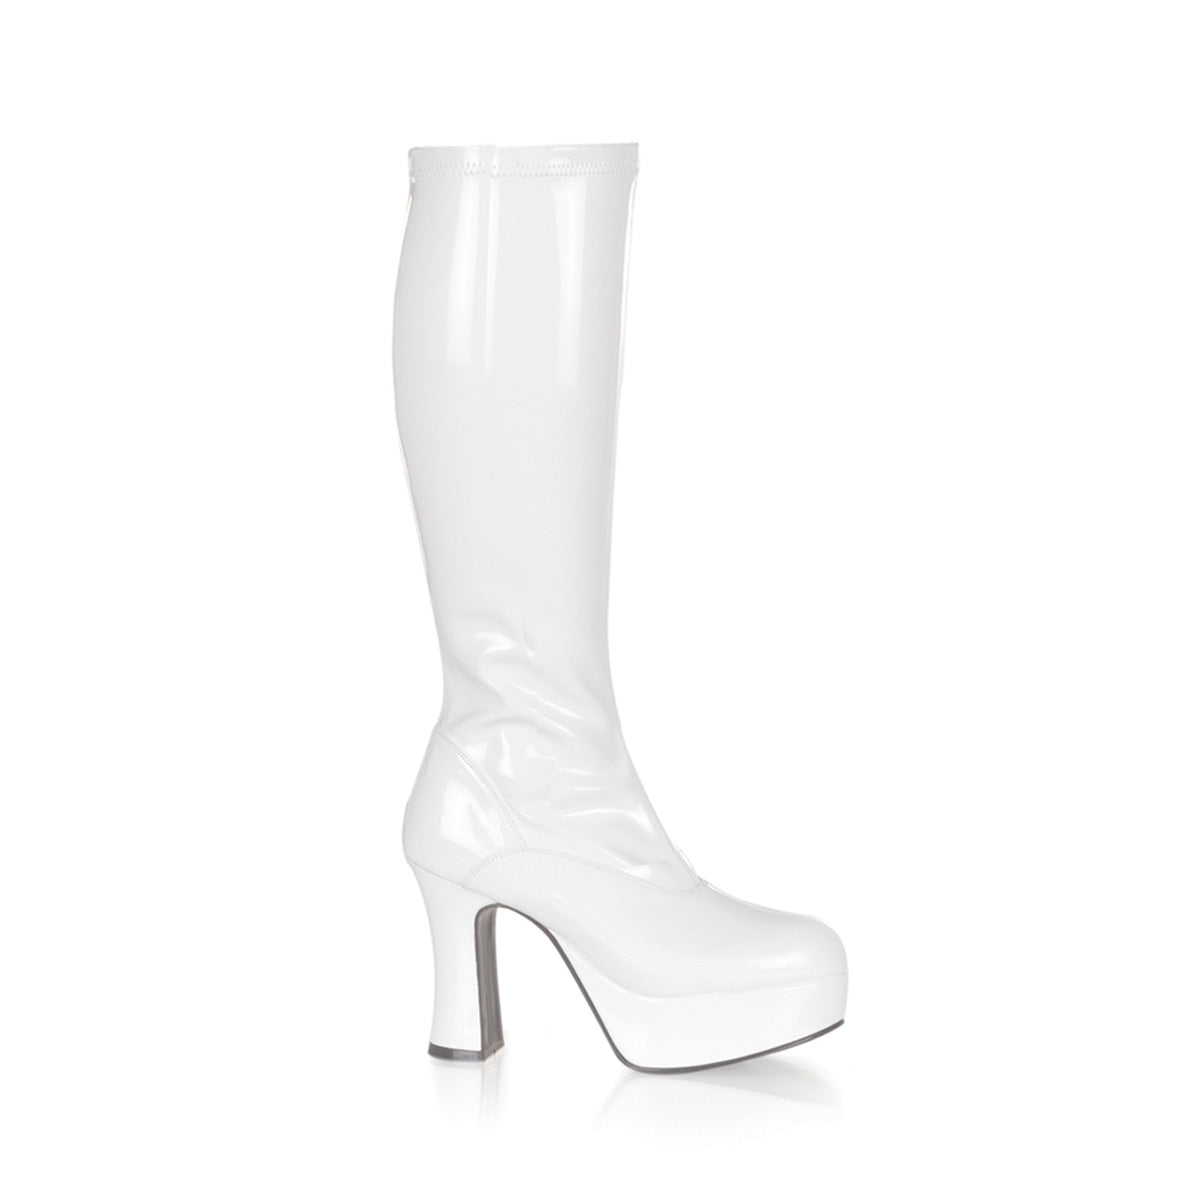 Exotica-2000 FUNTASMA 4 pulgadas de tacón blanco patente botas de mujer